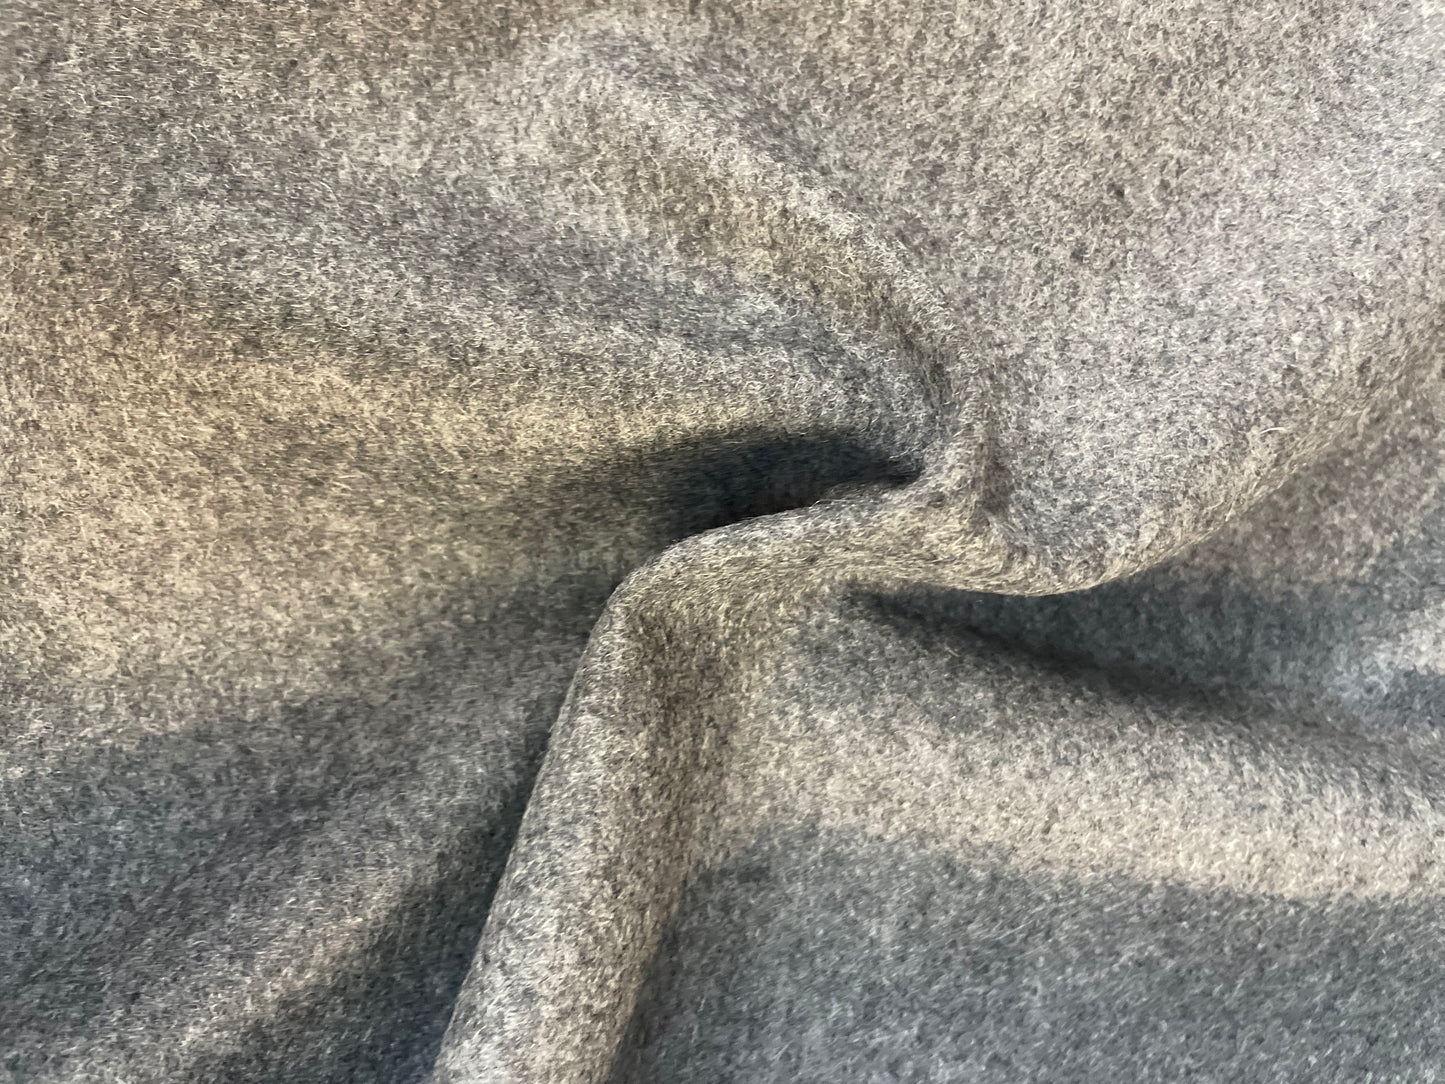 Italian Double Face Melton Wool - Woven Design/Heathered Medium Gray